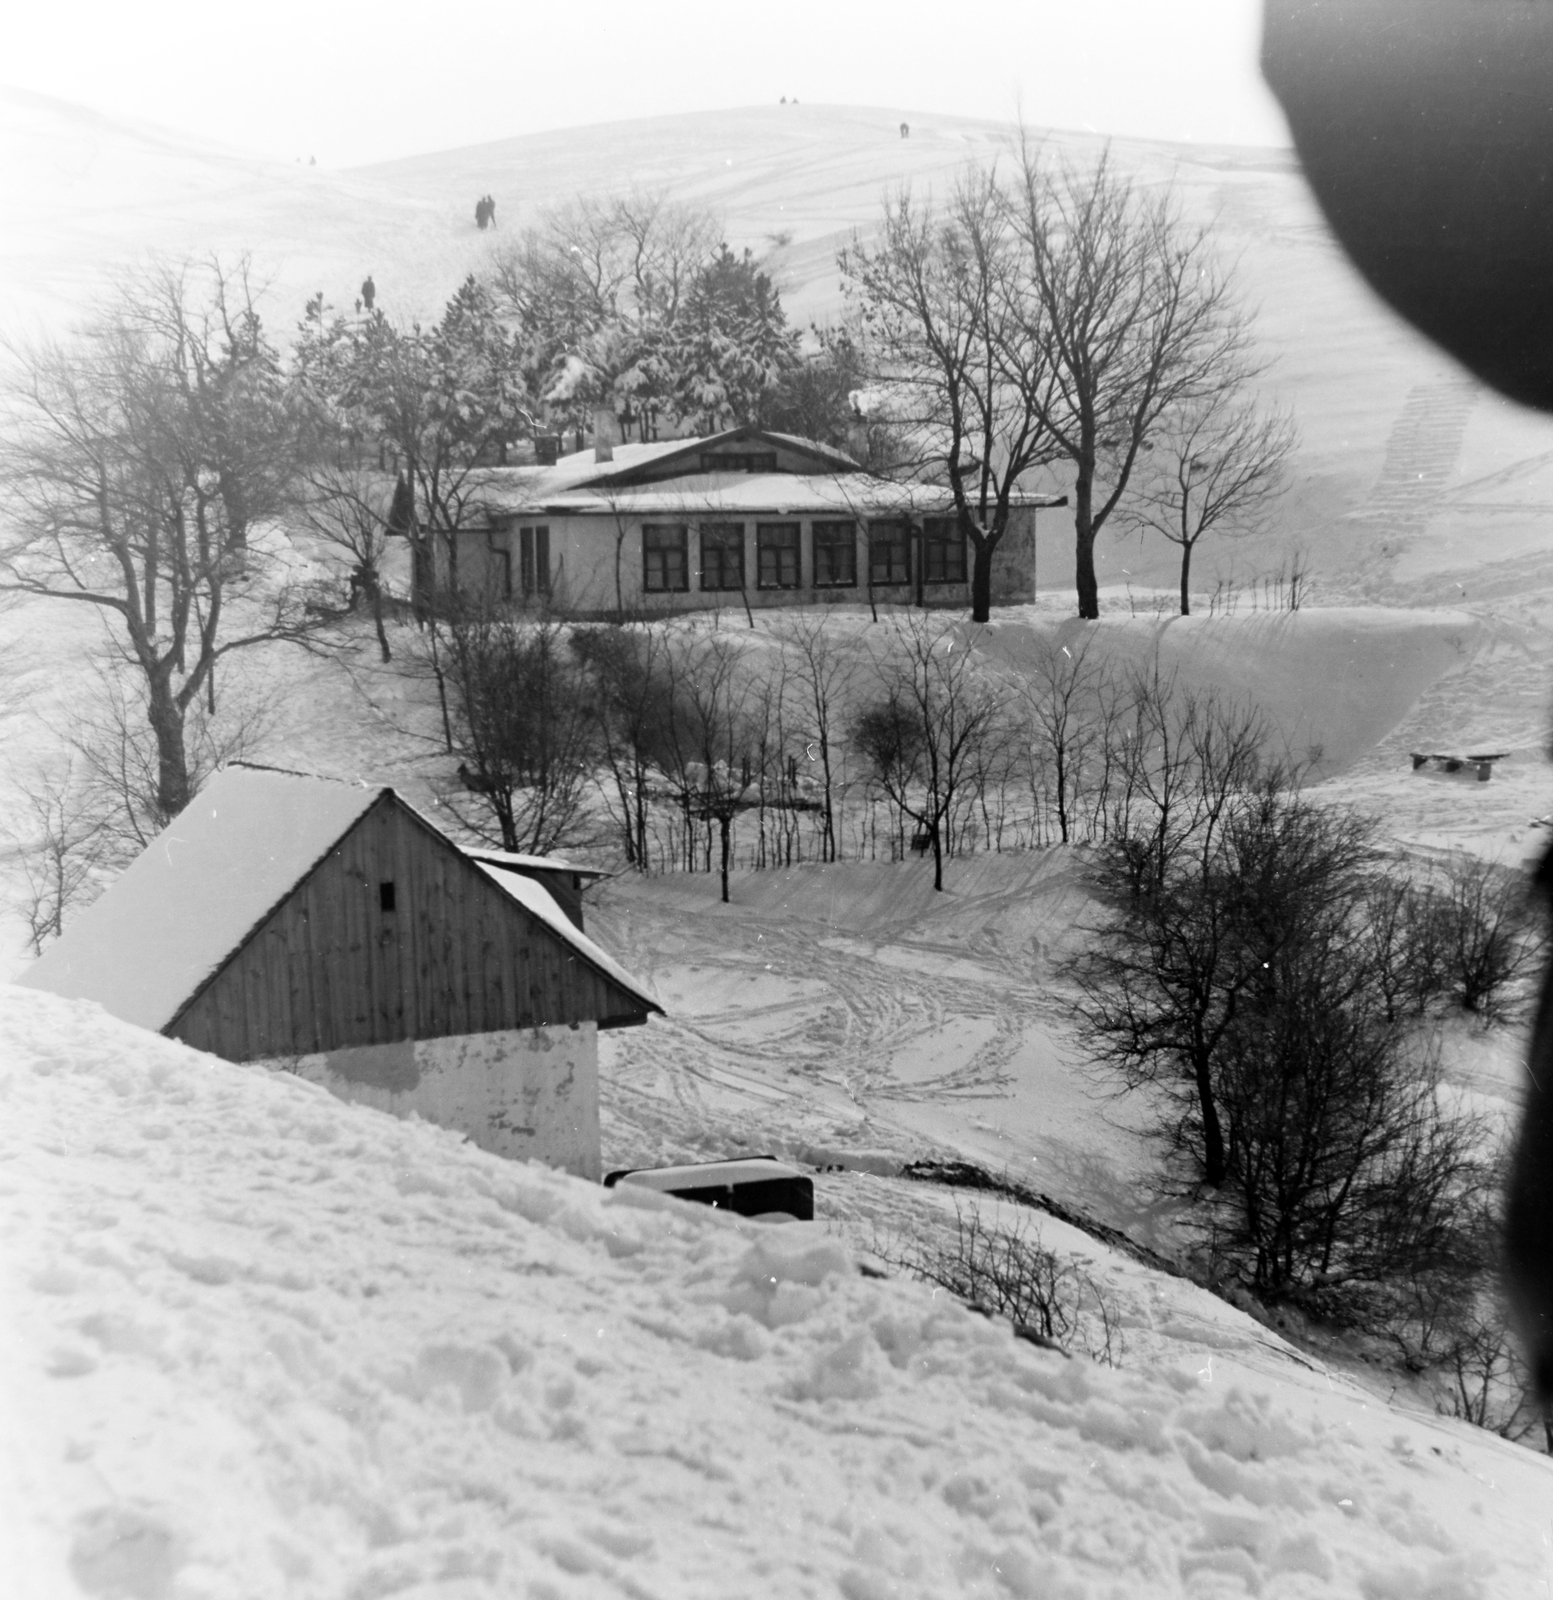 [13] Egy téli kép a turistaházról a korábbi kép nézőpontjából 1955-ben